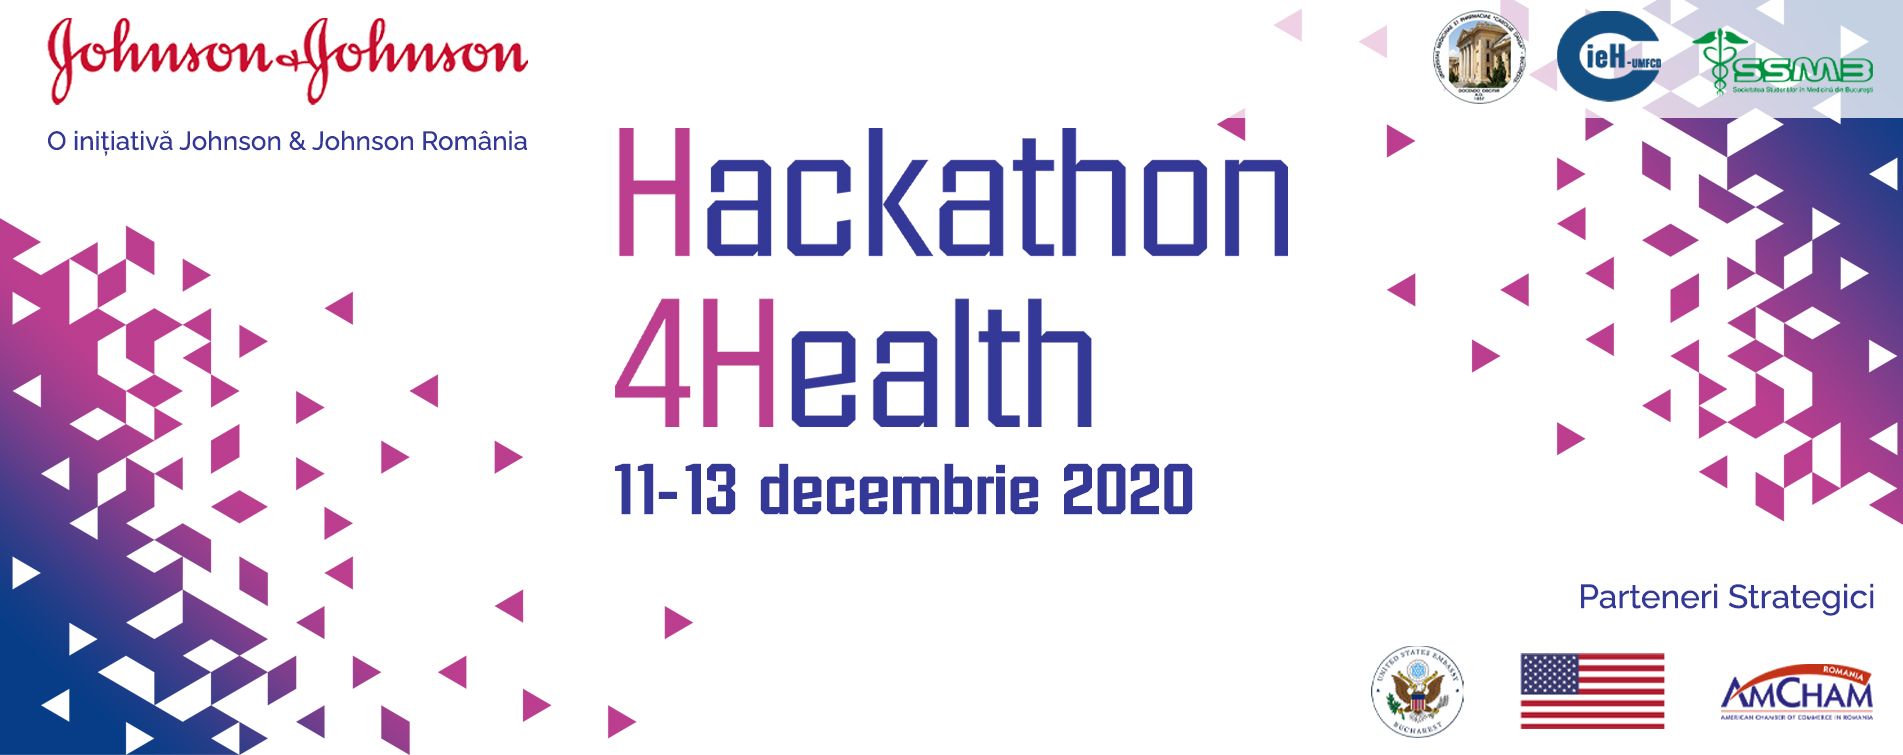 Hackathon4Health